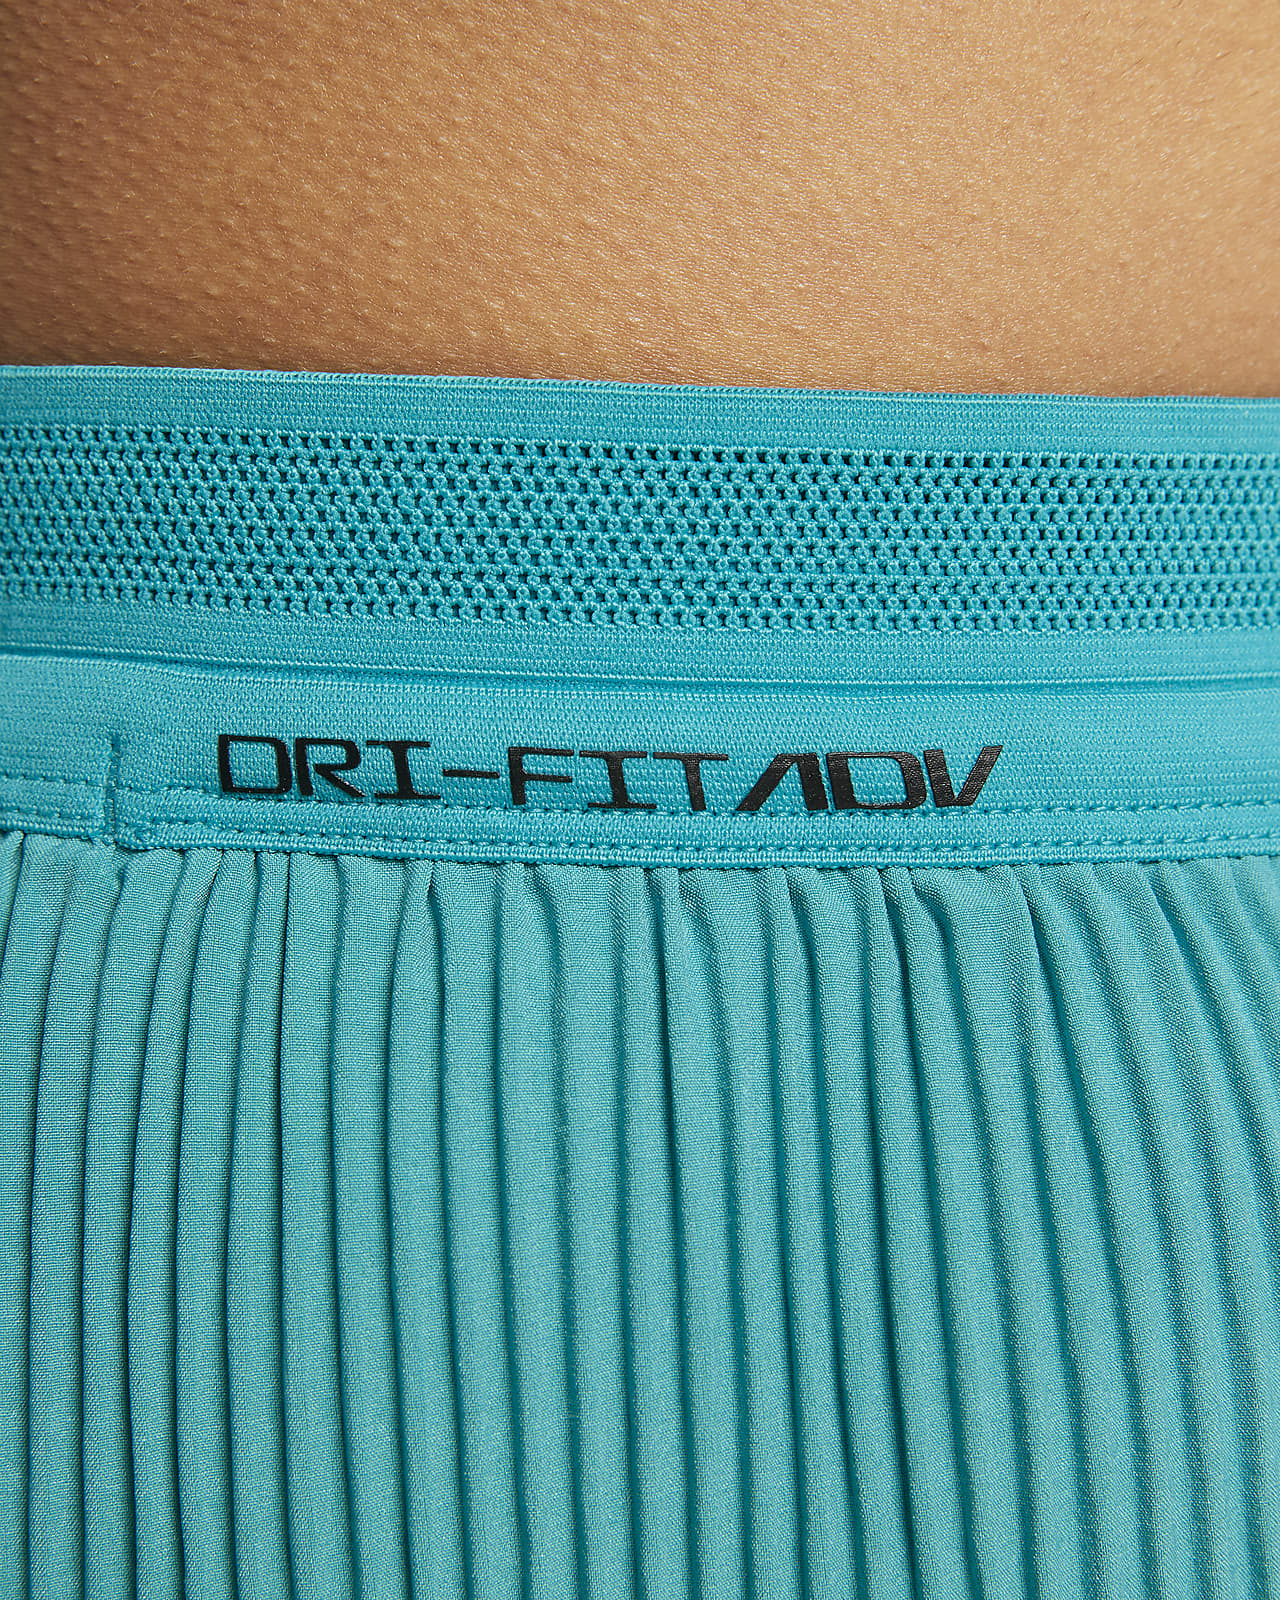 Fake Aeroswift shorts? Purchased on Poshmark : r/Nike